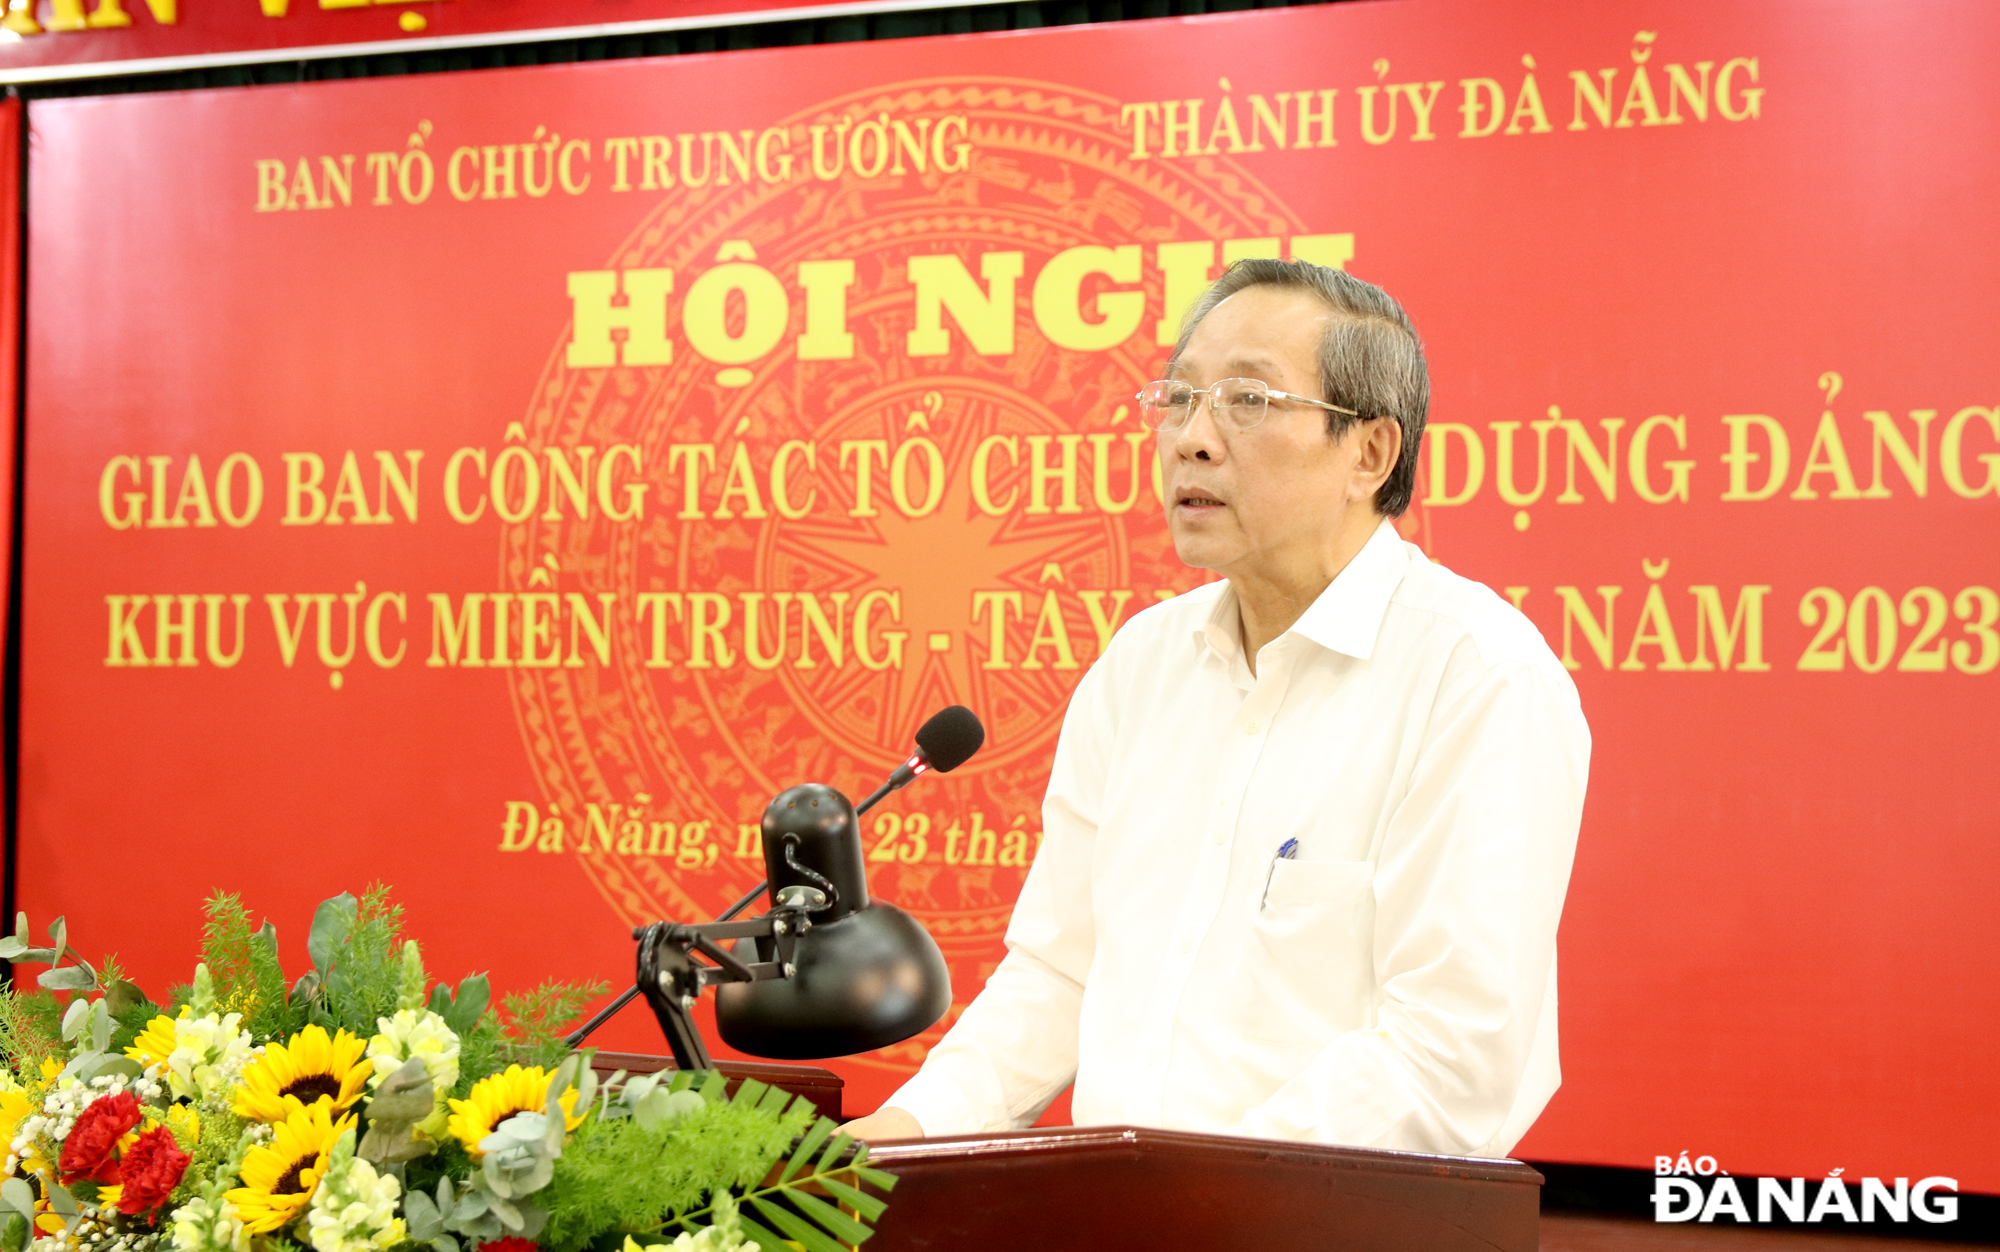 Đồng chí Hoàng Đăng Quang, Ủy viên Trung ương Đảng, Phó Trưởng Ban Tổ chức Trung ương phát biểu tại Hội nghị giao ban công tác tổ chức xây dựng Đảng khu vực miền Trung - Tây Nguyên năm 2023.